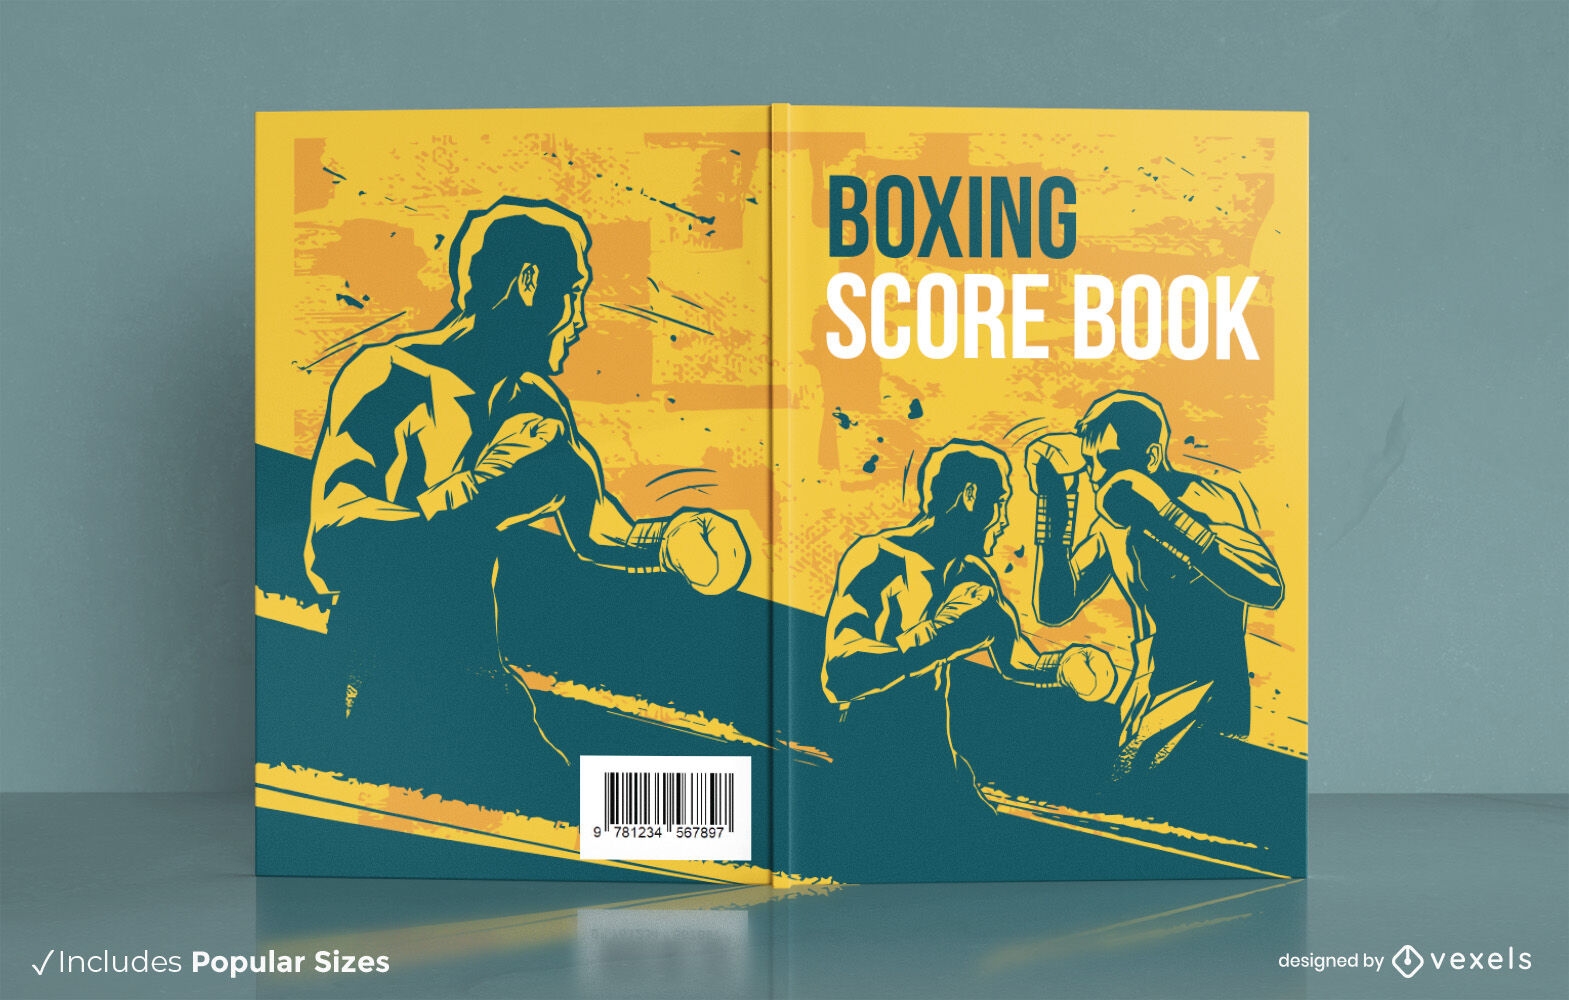 Boxe de pessoas para design de capa de livro esportivo